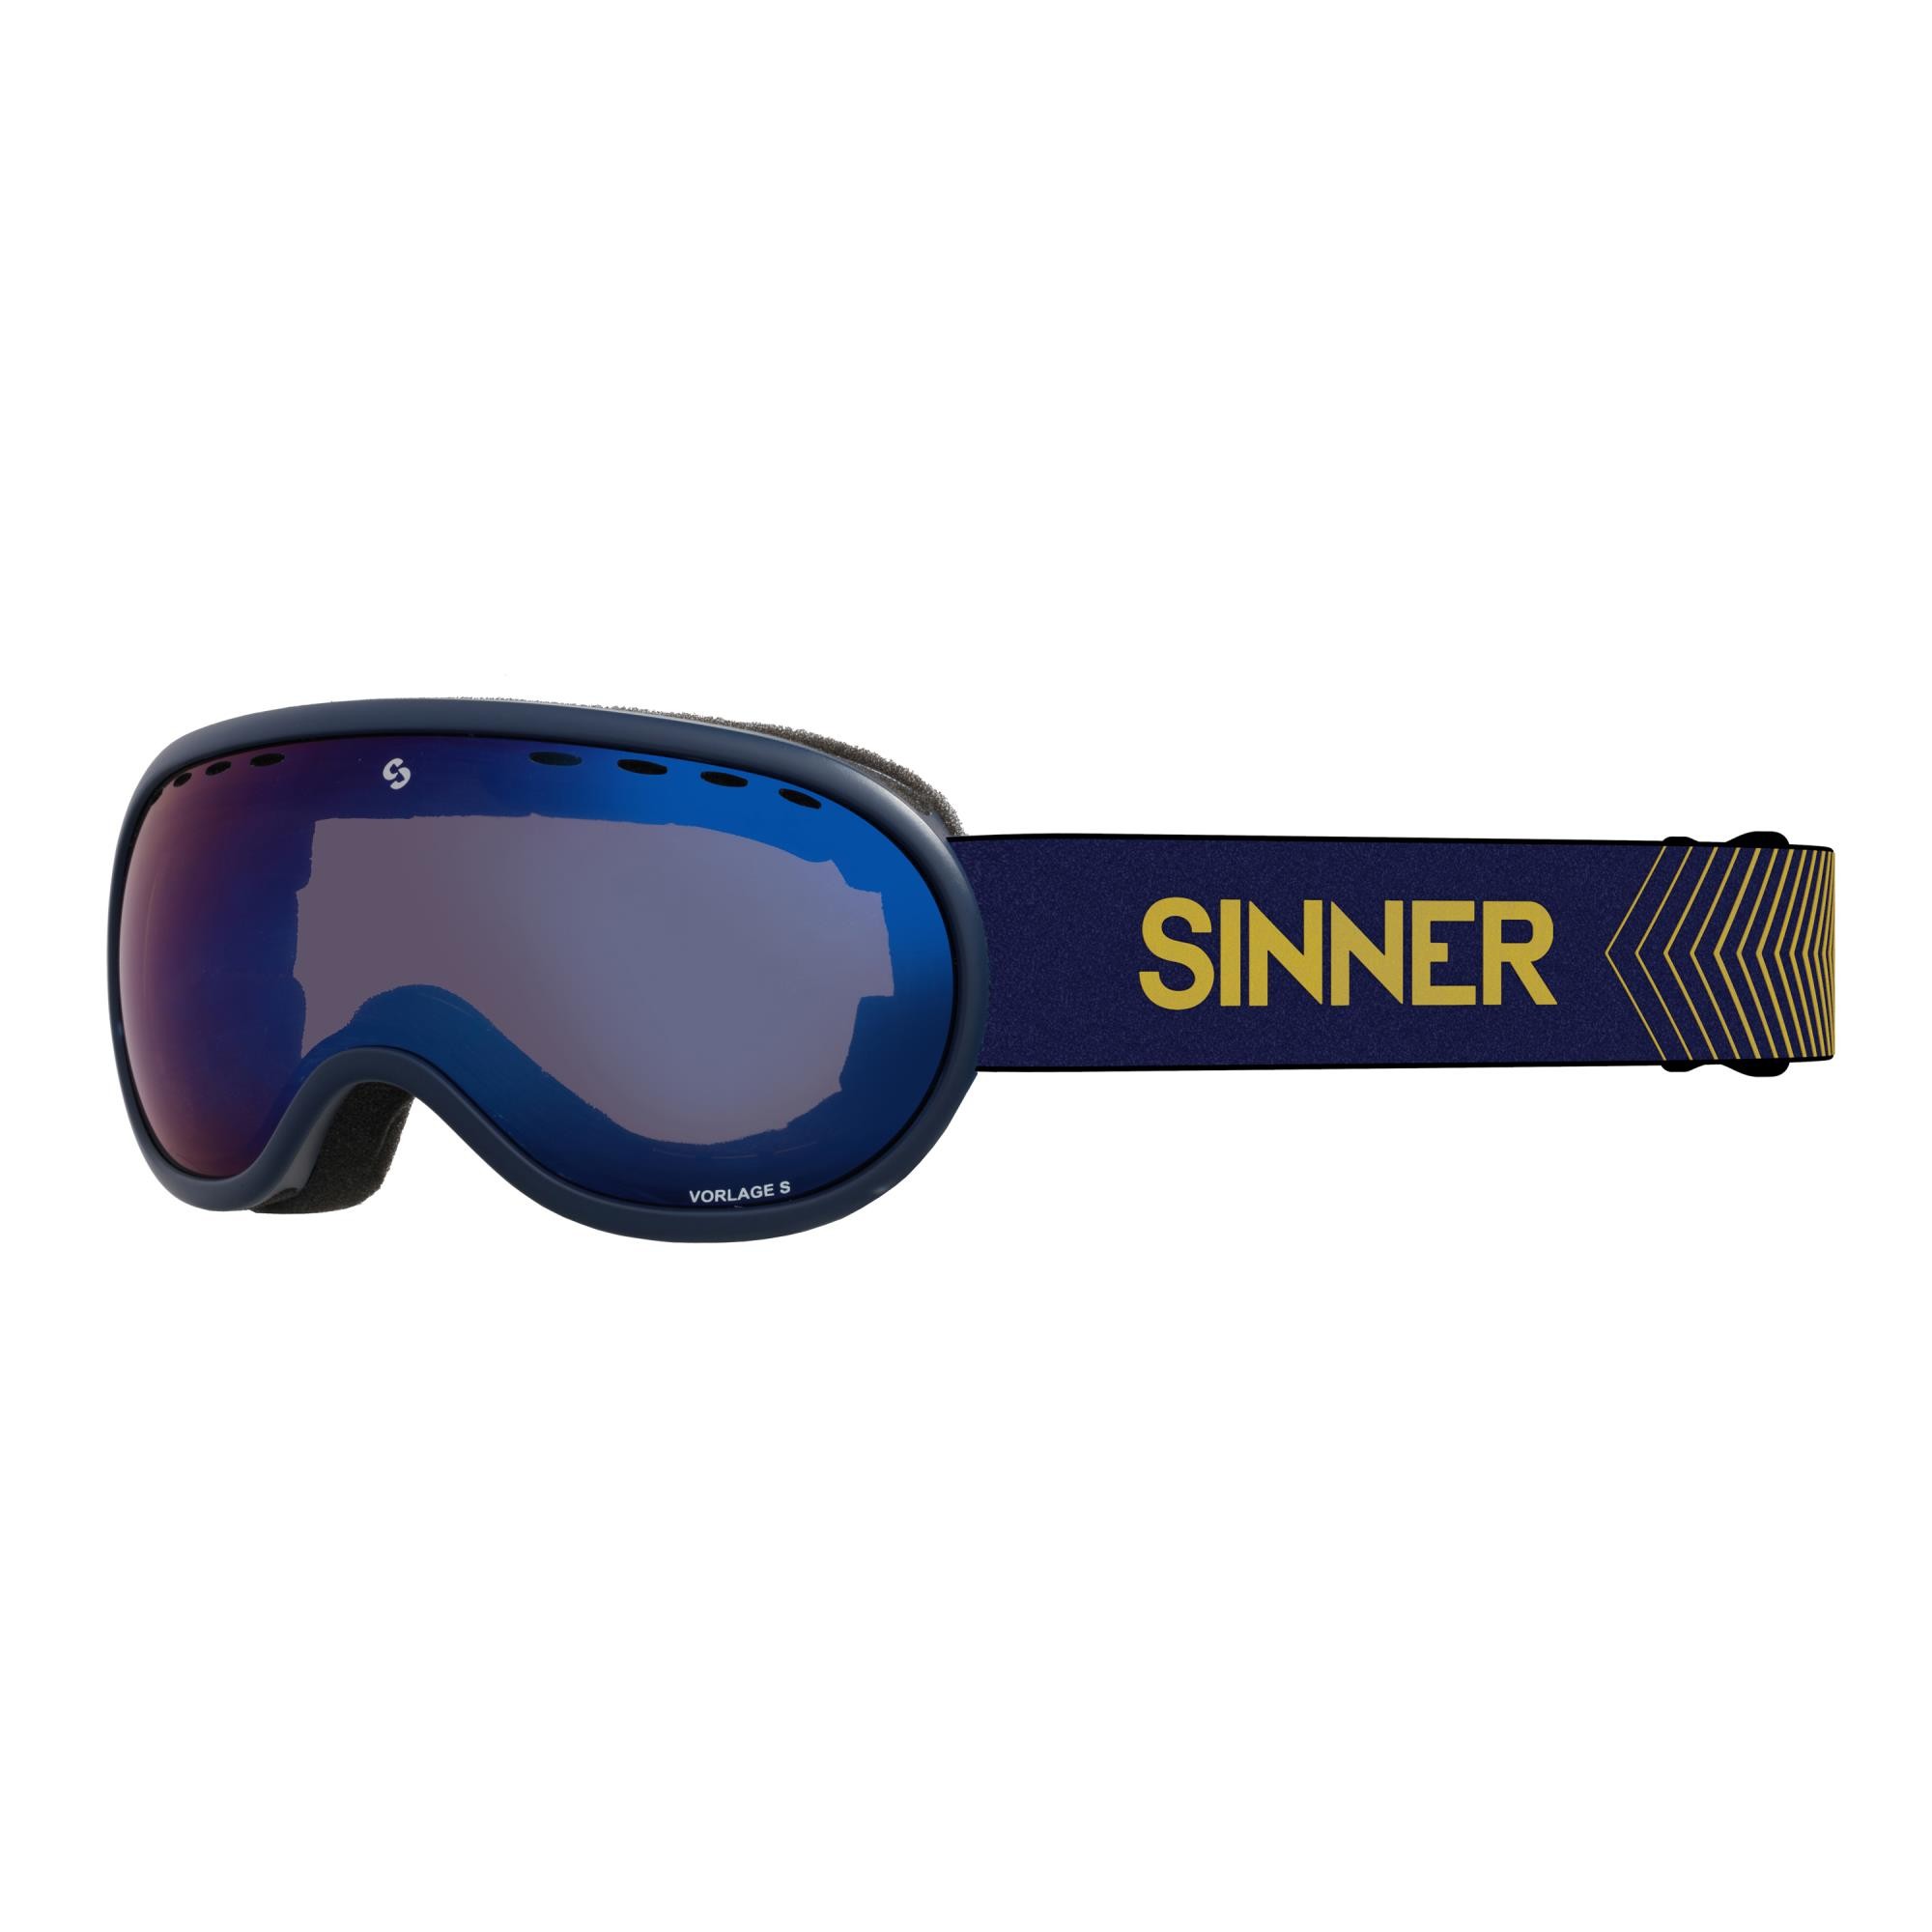 Sinner Vorlage S skibril - Donkerblauw - Blauwe lens